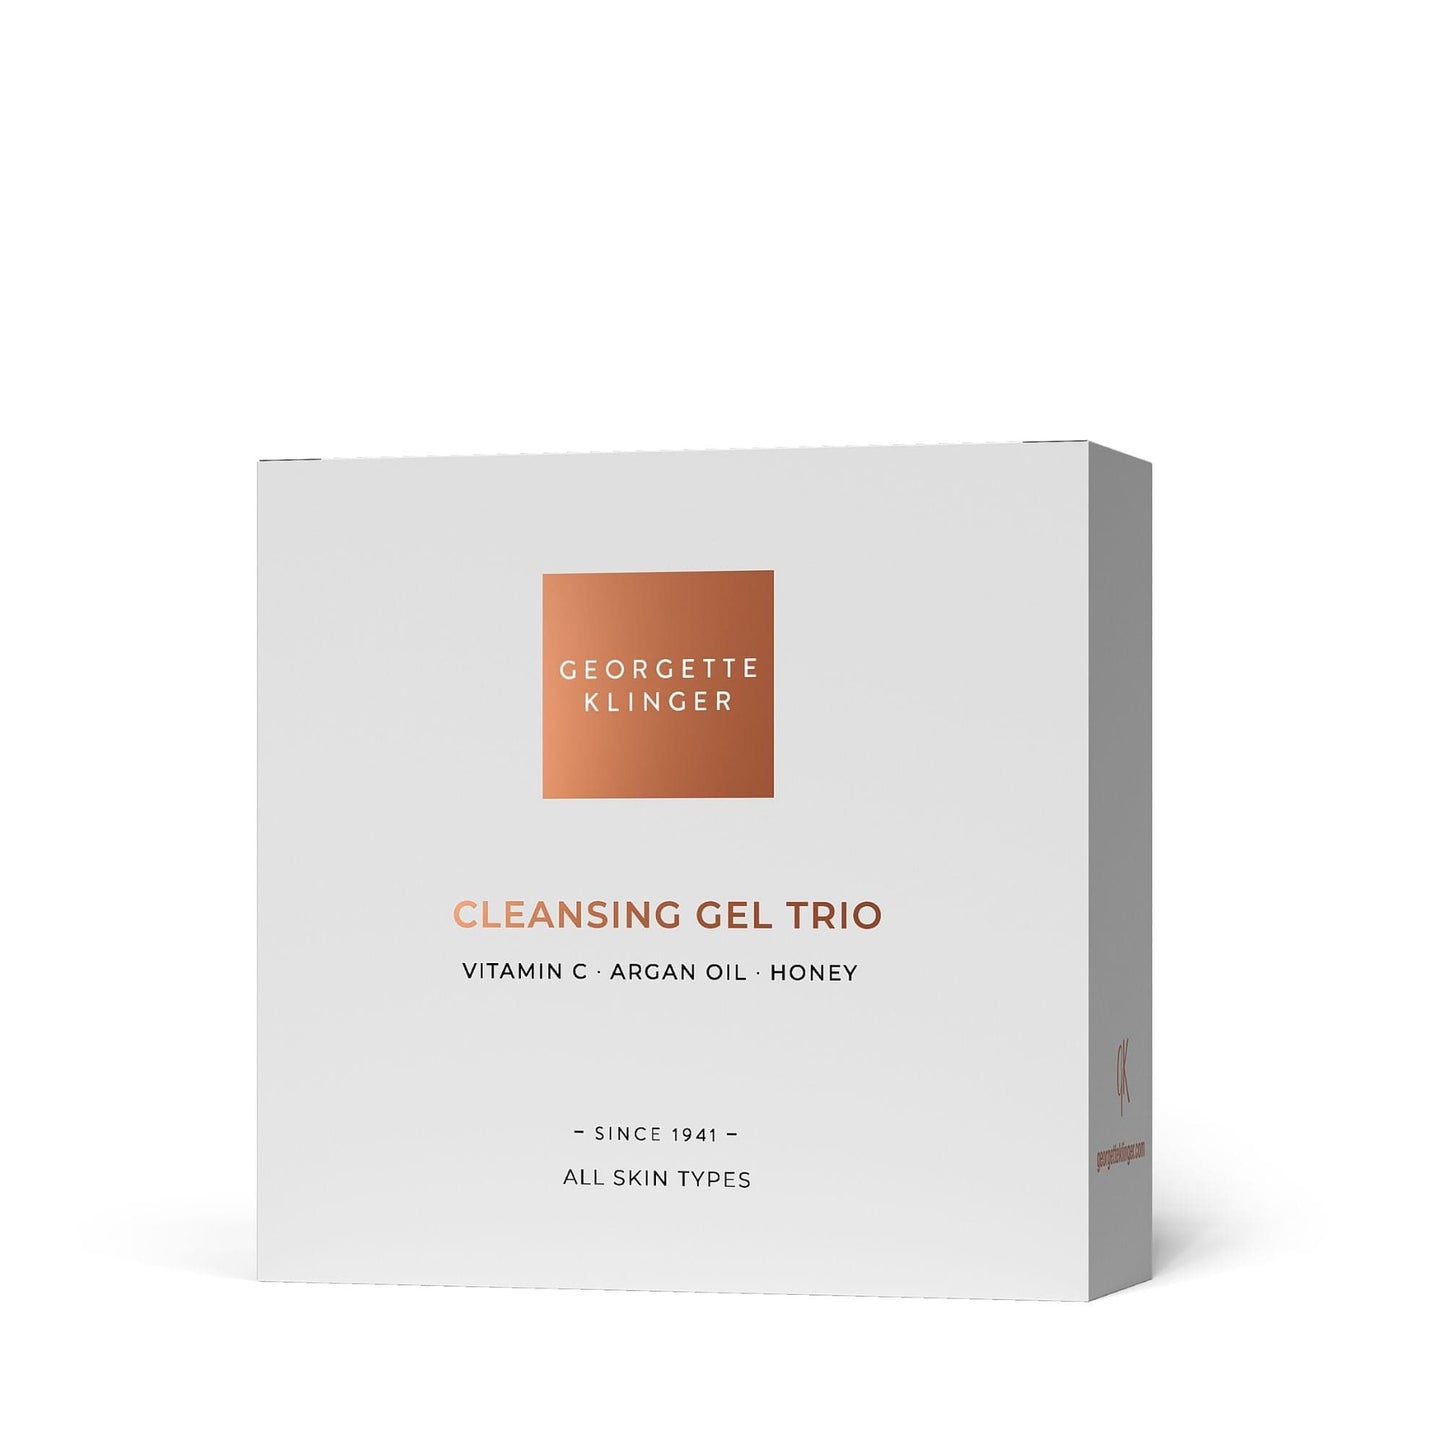 Cleansing Gel Trio